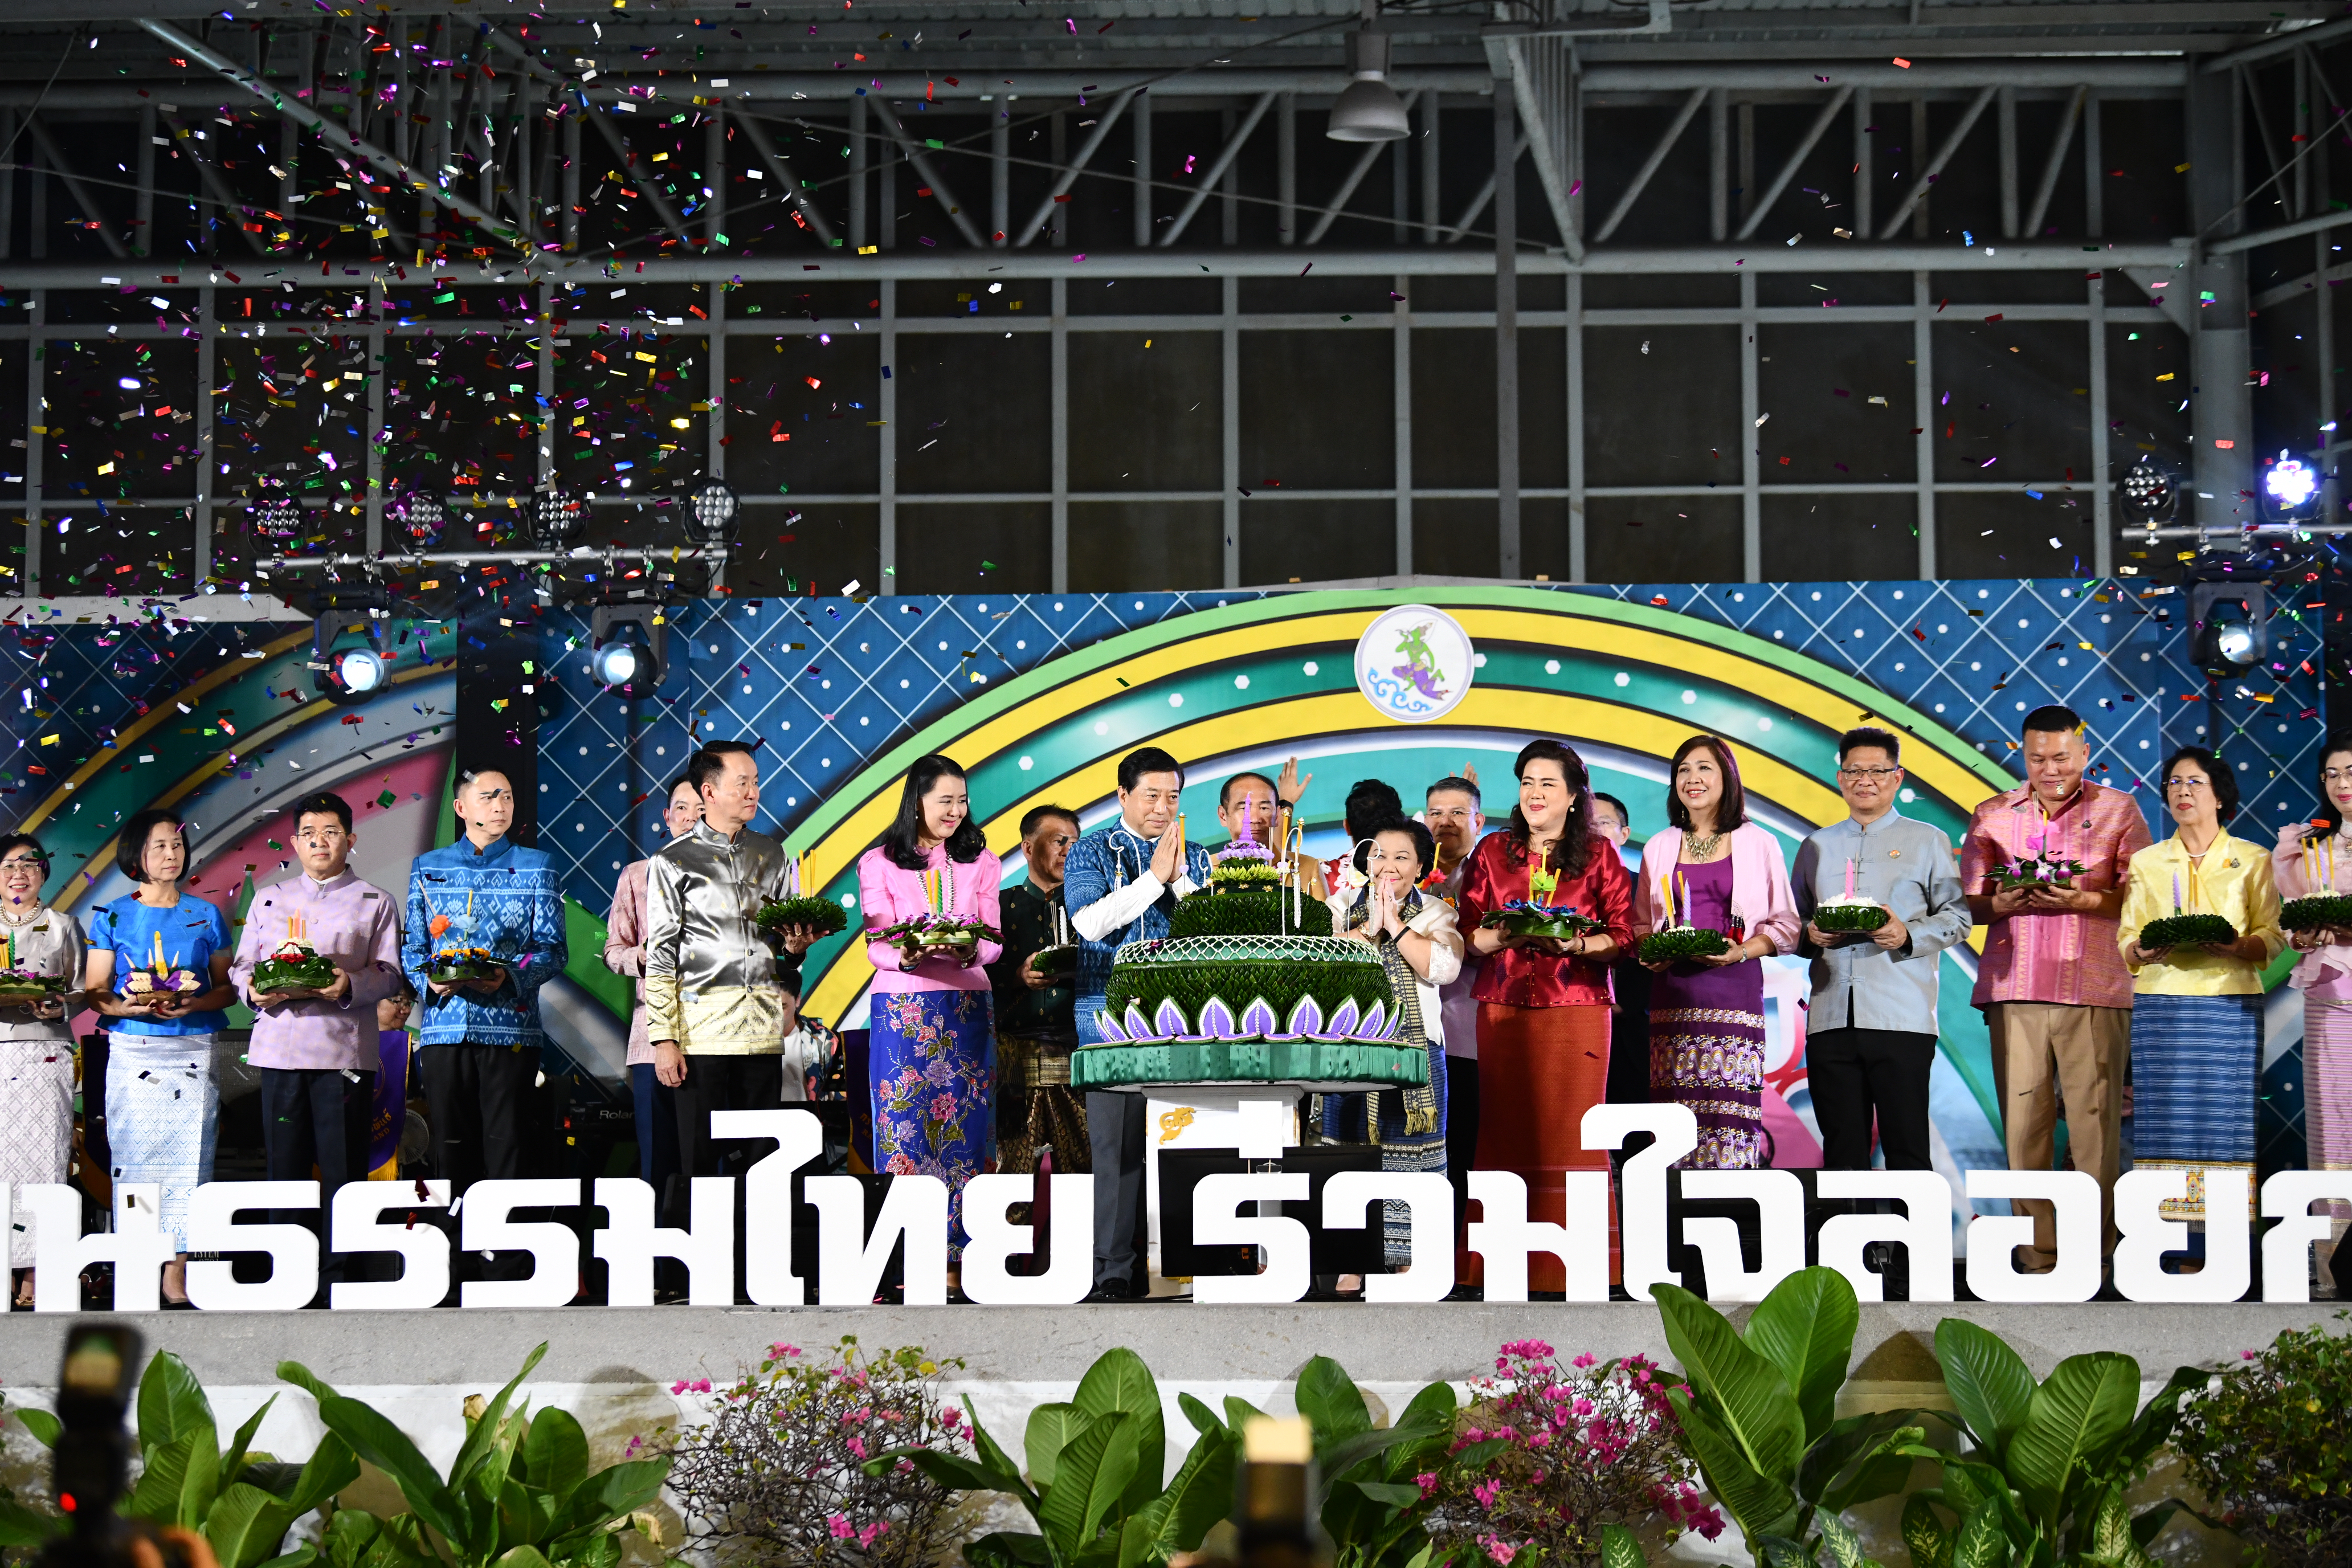 27-29 พ.ย. นี้ กรมประชาสัมพันธ์ เชิญชวนเที่ยวงาน "สืบสานวัฒนธรรมไทย ร่วมใจลอยกระทง ประจำปี 2566" ณ กรมประชาสัมพันธ์ แต่งไทยกันทั้งครอบครัว ชิม ช็อป ชิล ตลอดวัน!